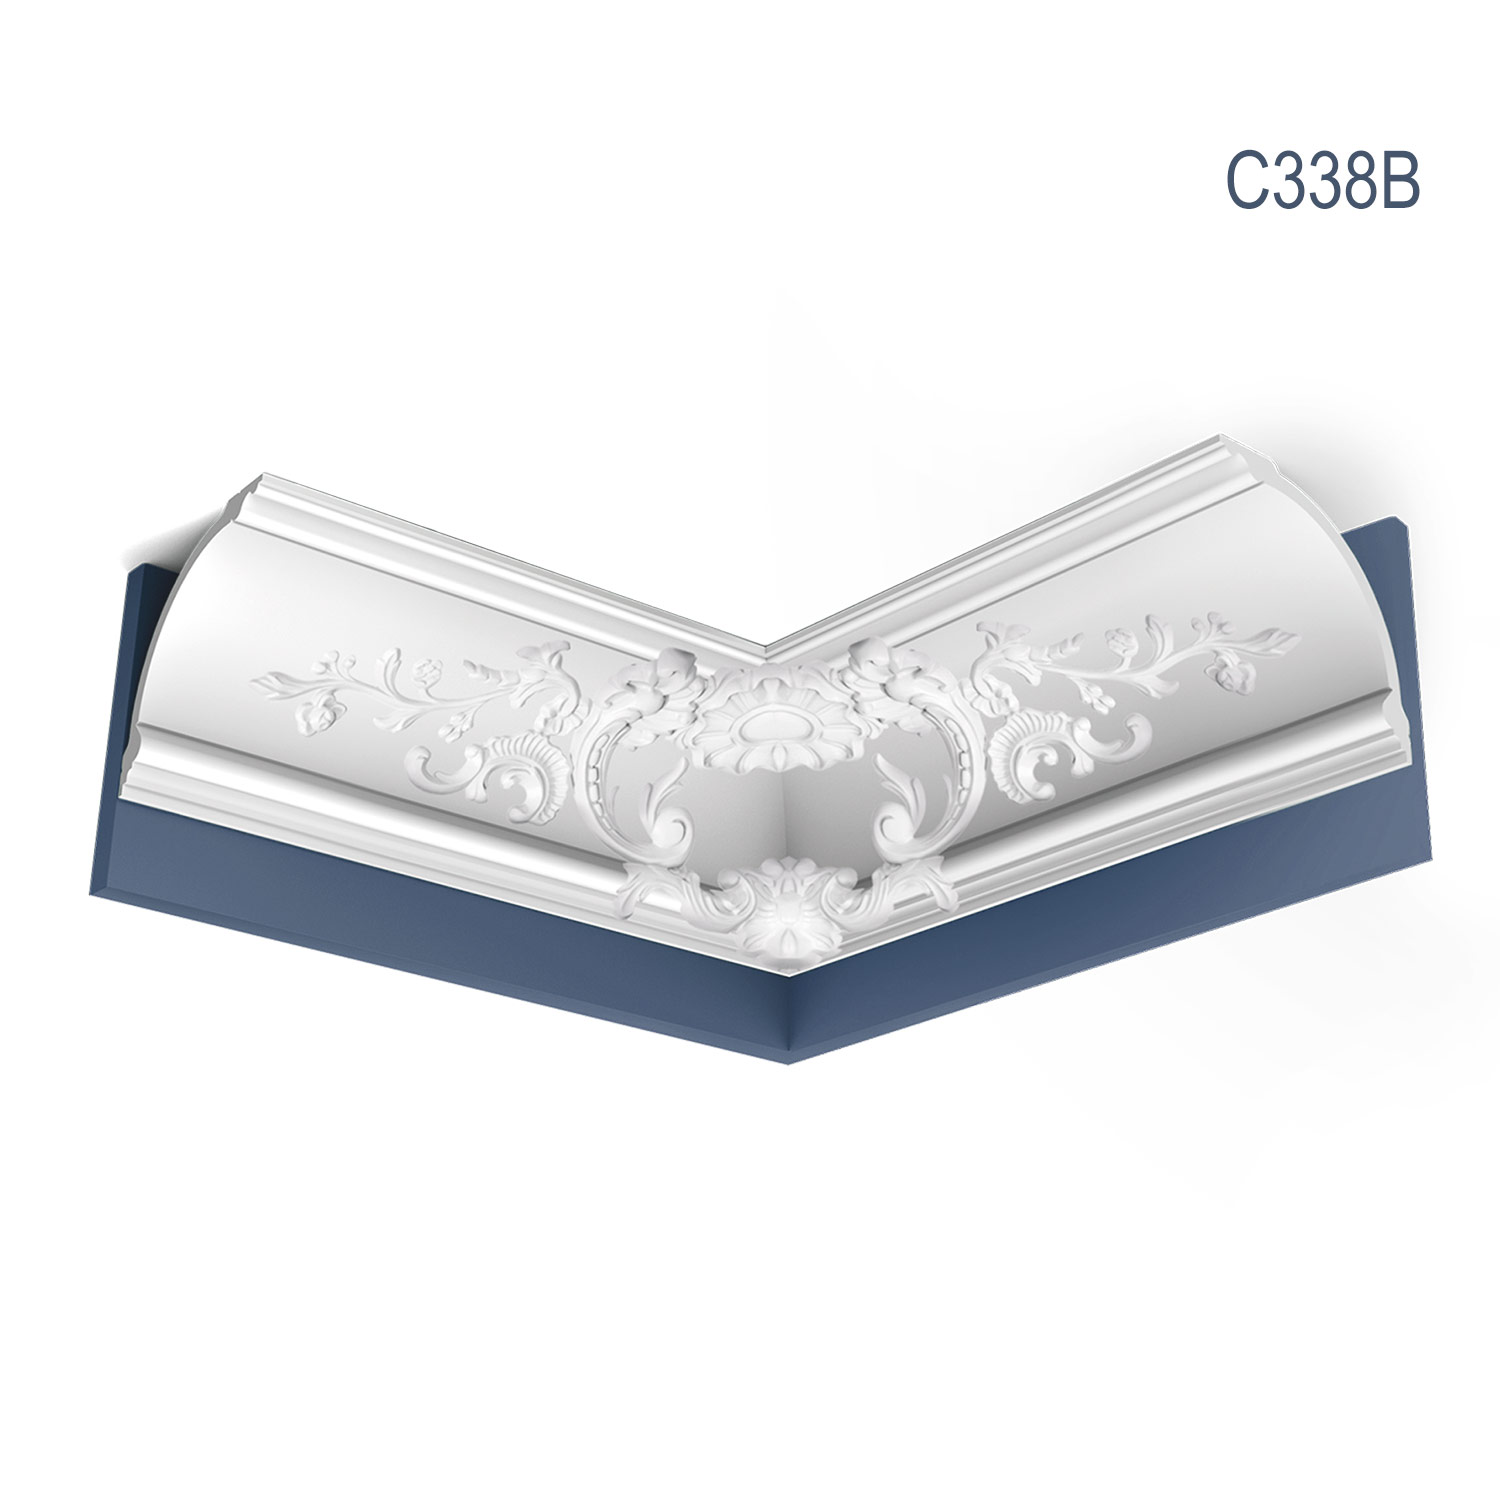 Cornisa C338 B, profil decorativ, pentru tavan, alba, vopsibila, rigida, calitate excelenta, Belgia, din Poliuretan rigid, L 200 x H 18.2 x W 18.2 cm